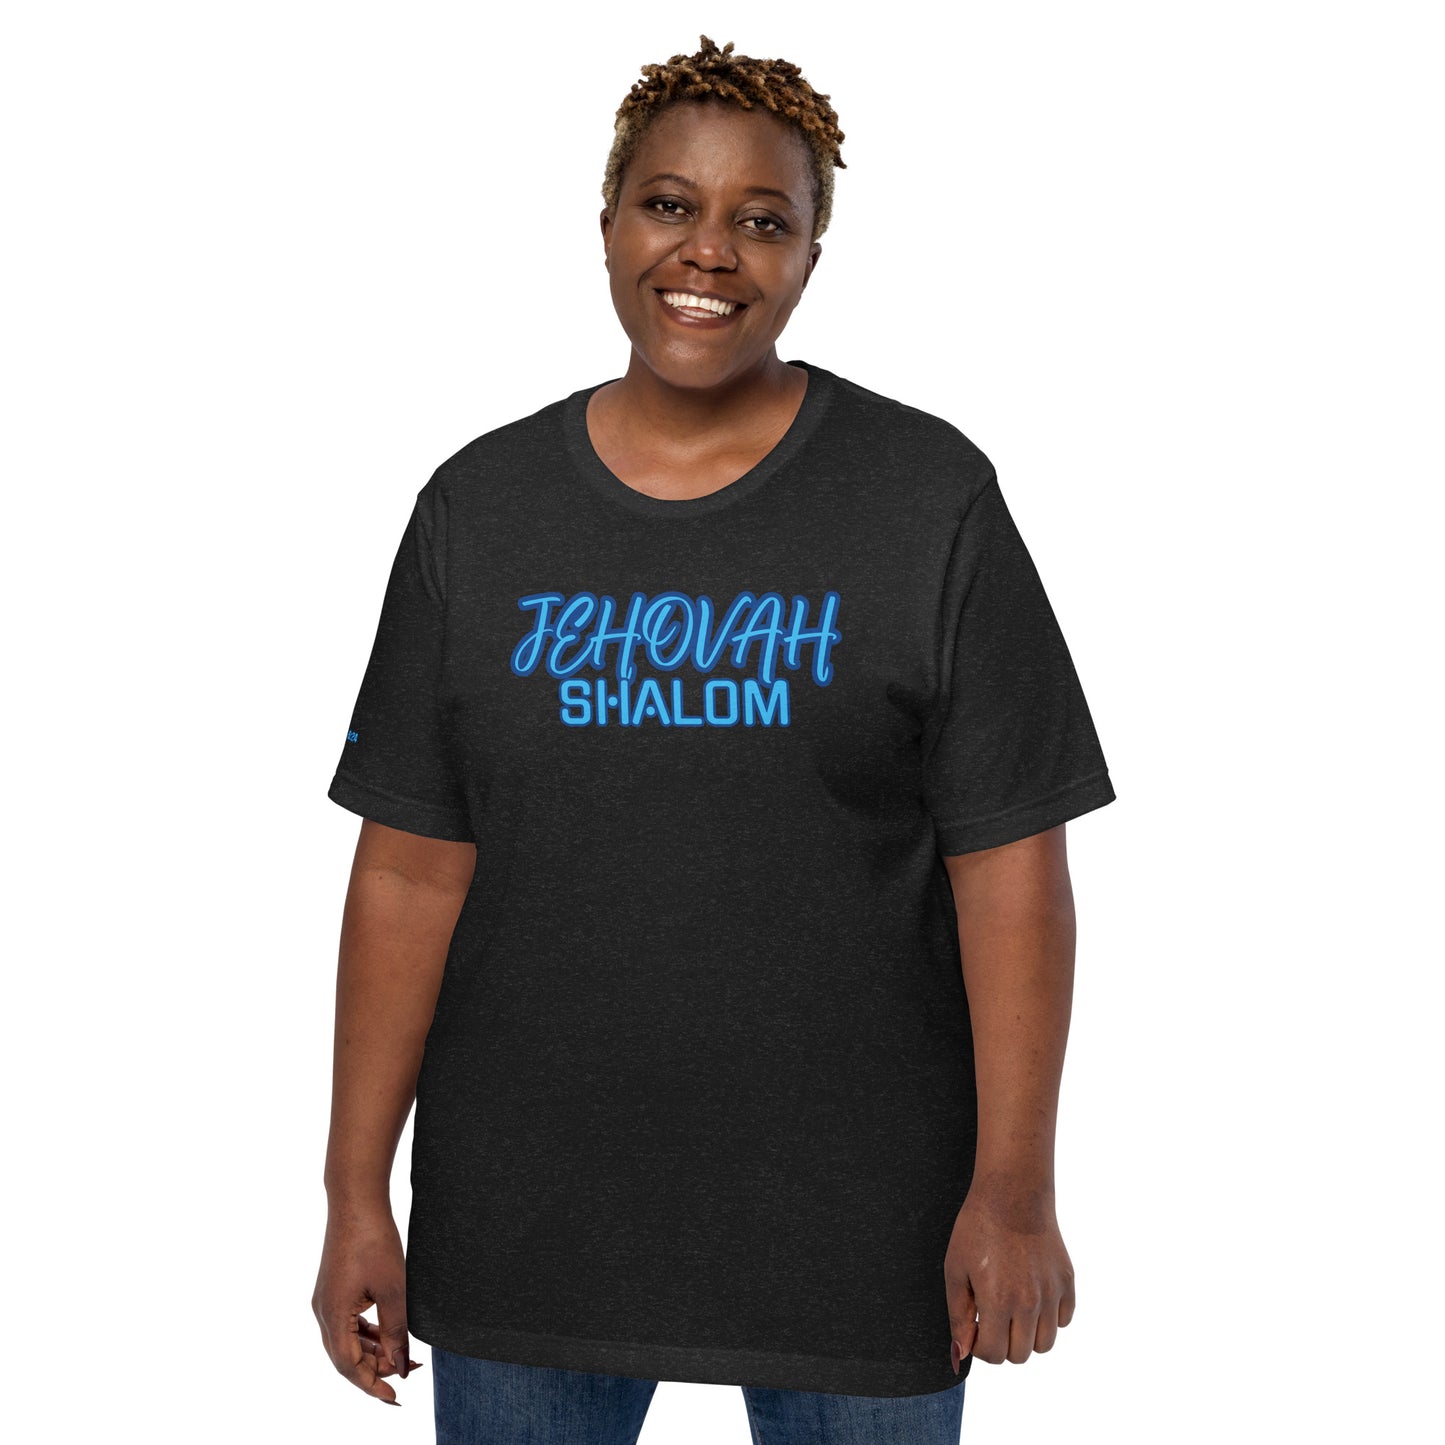 JEHOVAH SHALOM- Unisex t-shirt